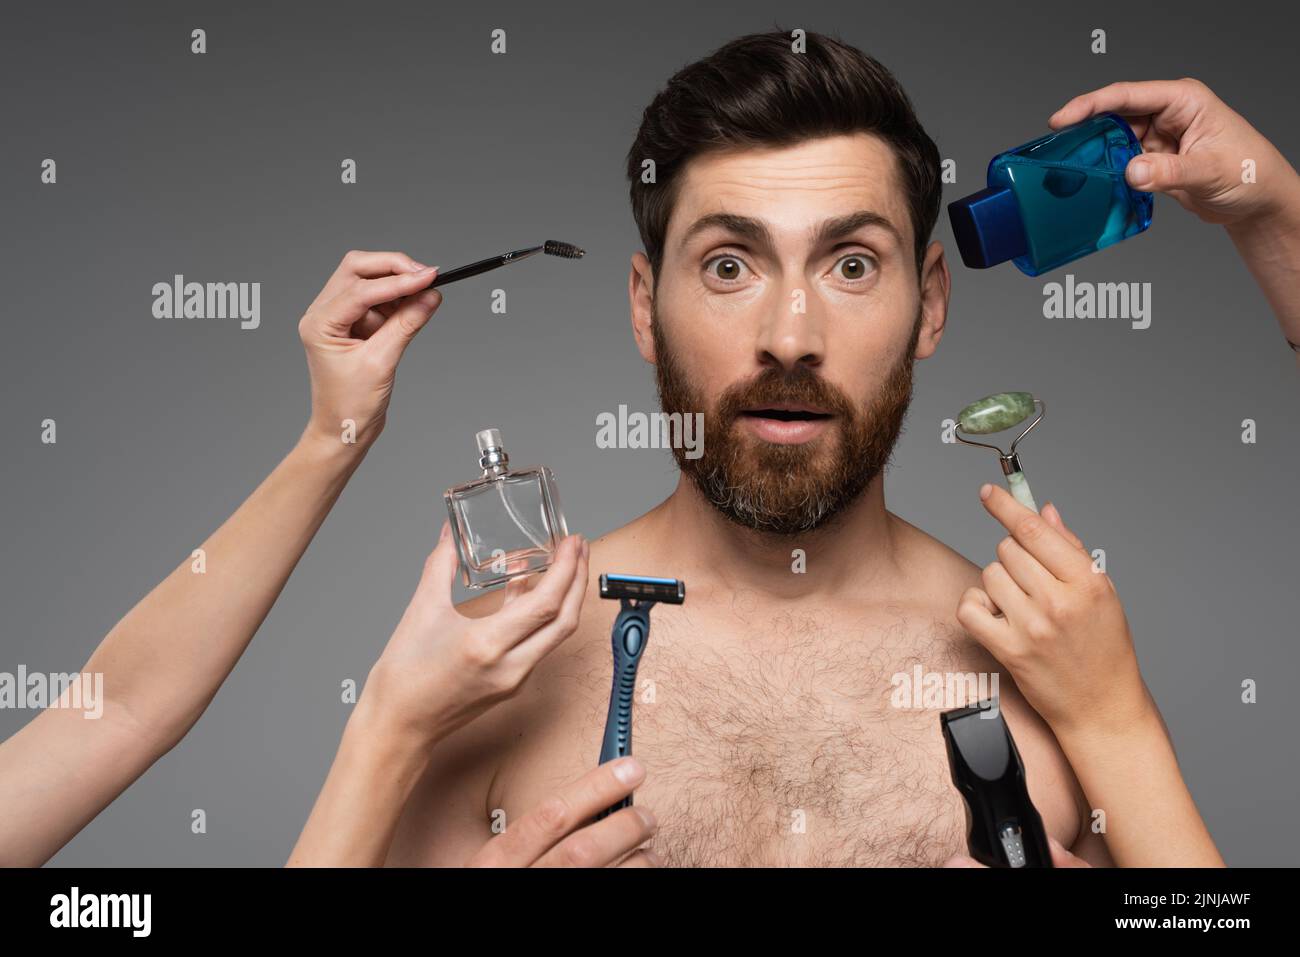 mujeres que sostienen productos de belleza alrededor de barbudo y hombre sorprendido en gris, imagen de stock Foto de stock